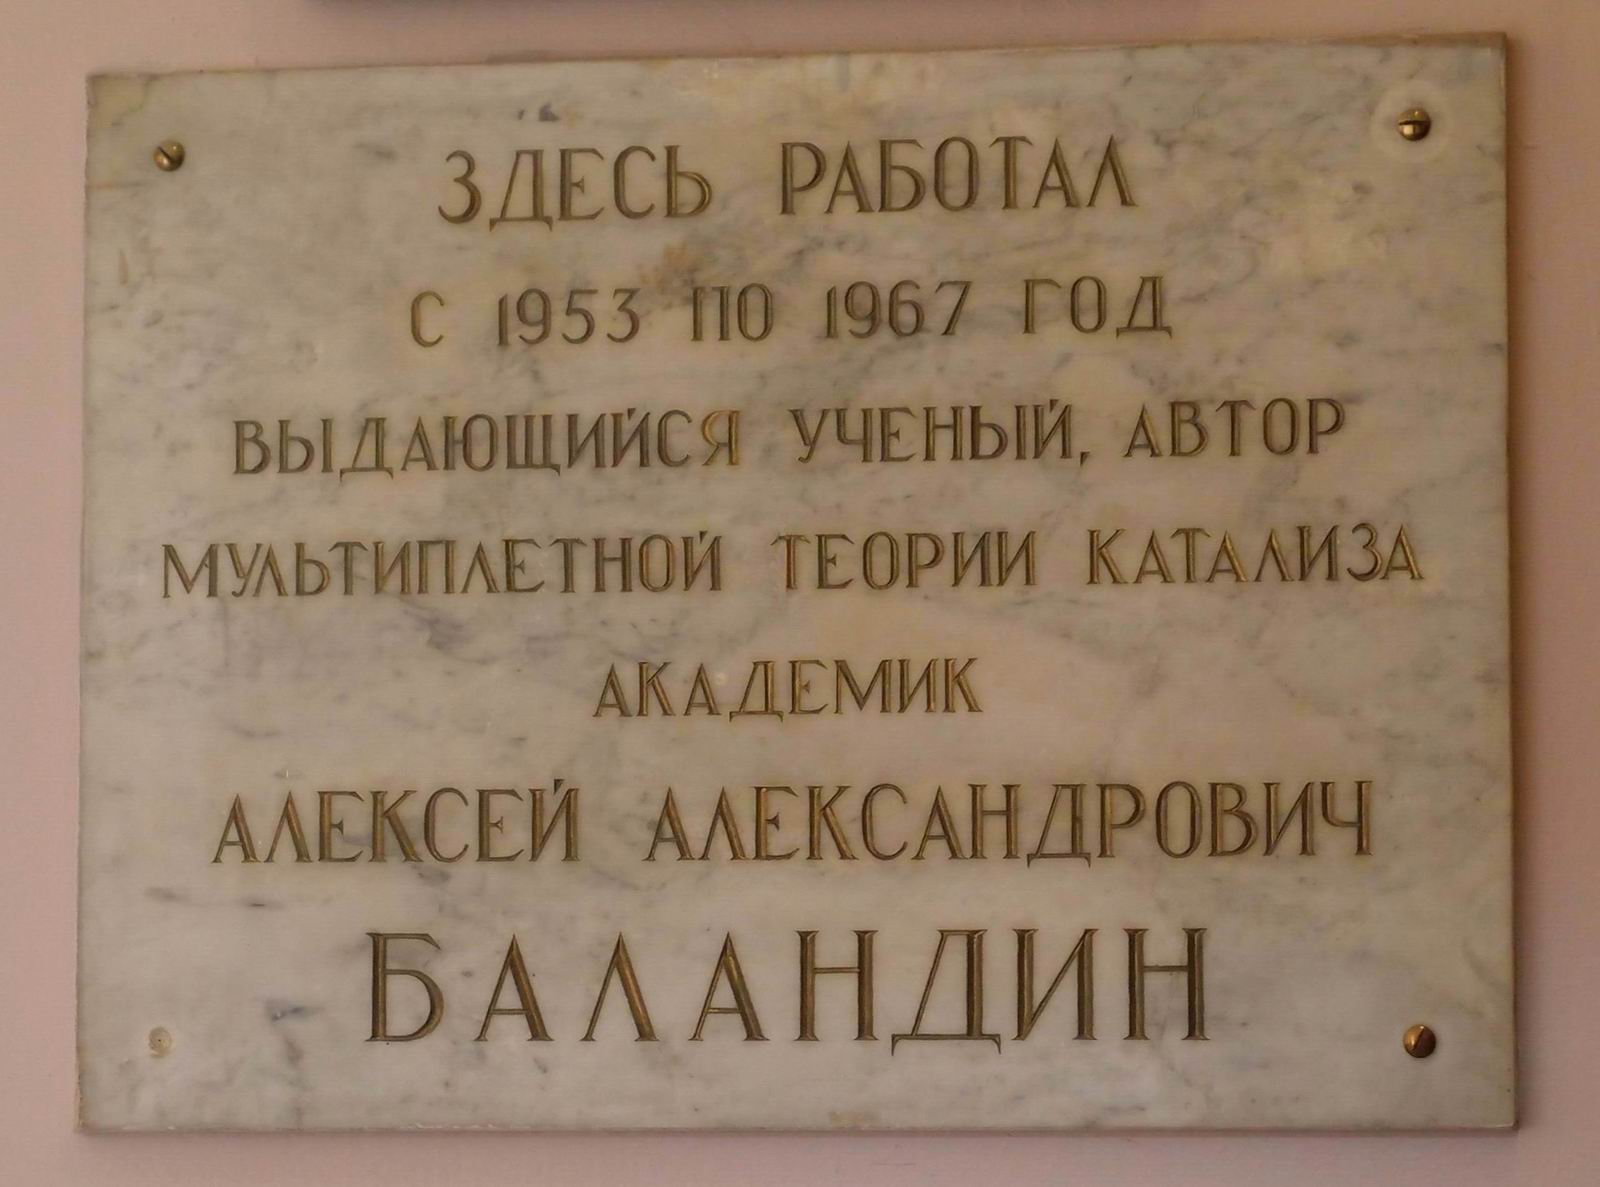 Мемориальная доска Баландину А.А. (1898–1967), на Ленинских горах, дом 1, строение 3 (в корпусе Химического факультета МГУ), открыта в 1973.